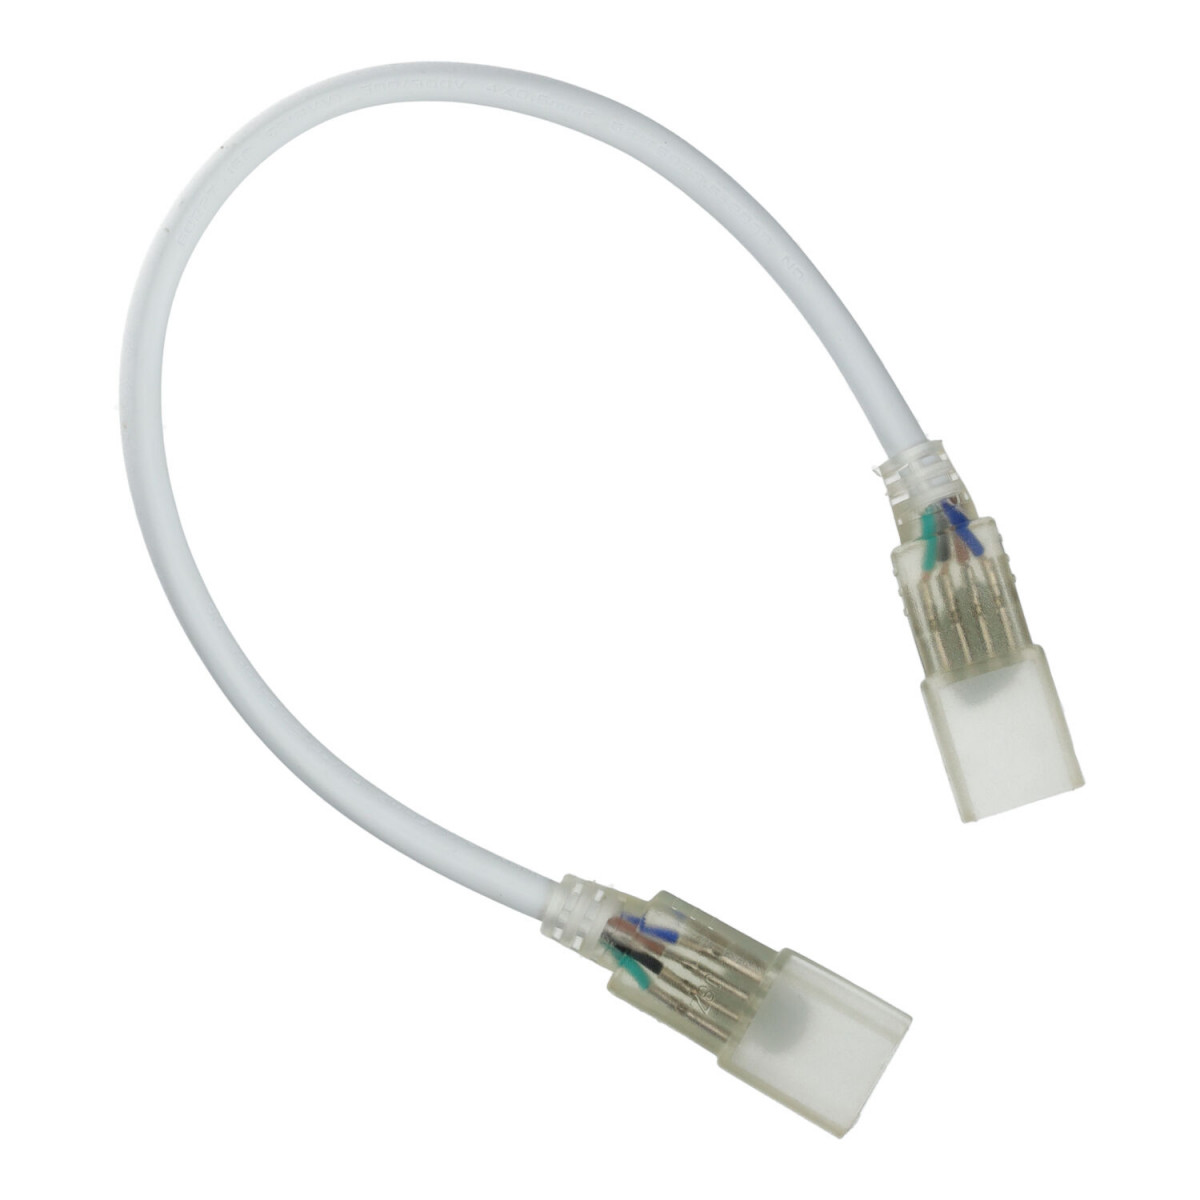 Double connexion pour bande LED RGB 220V